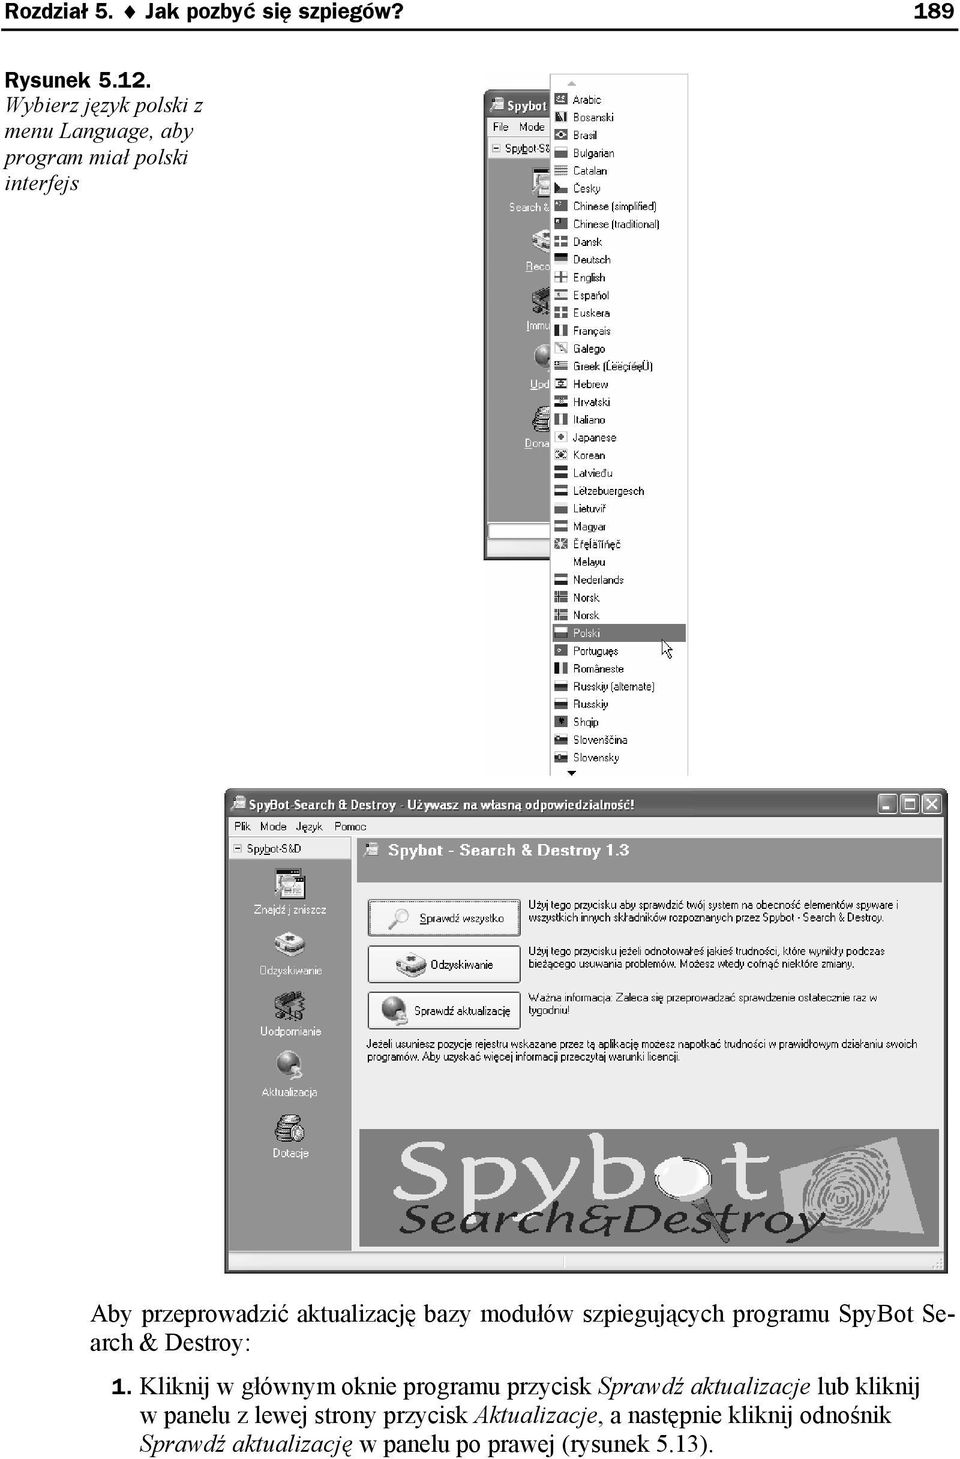 bazy modułów szpiegujących programu SpyBot Search & Destroy: 1.